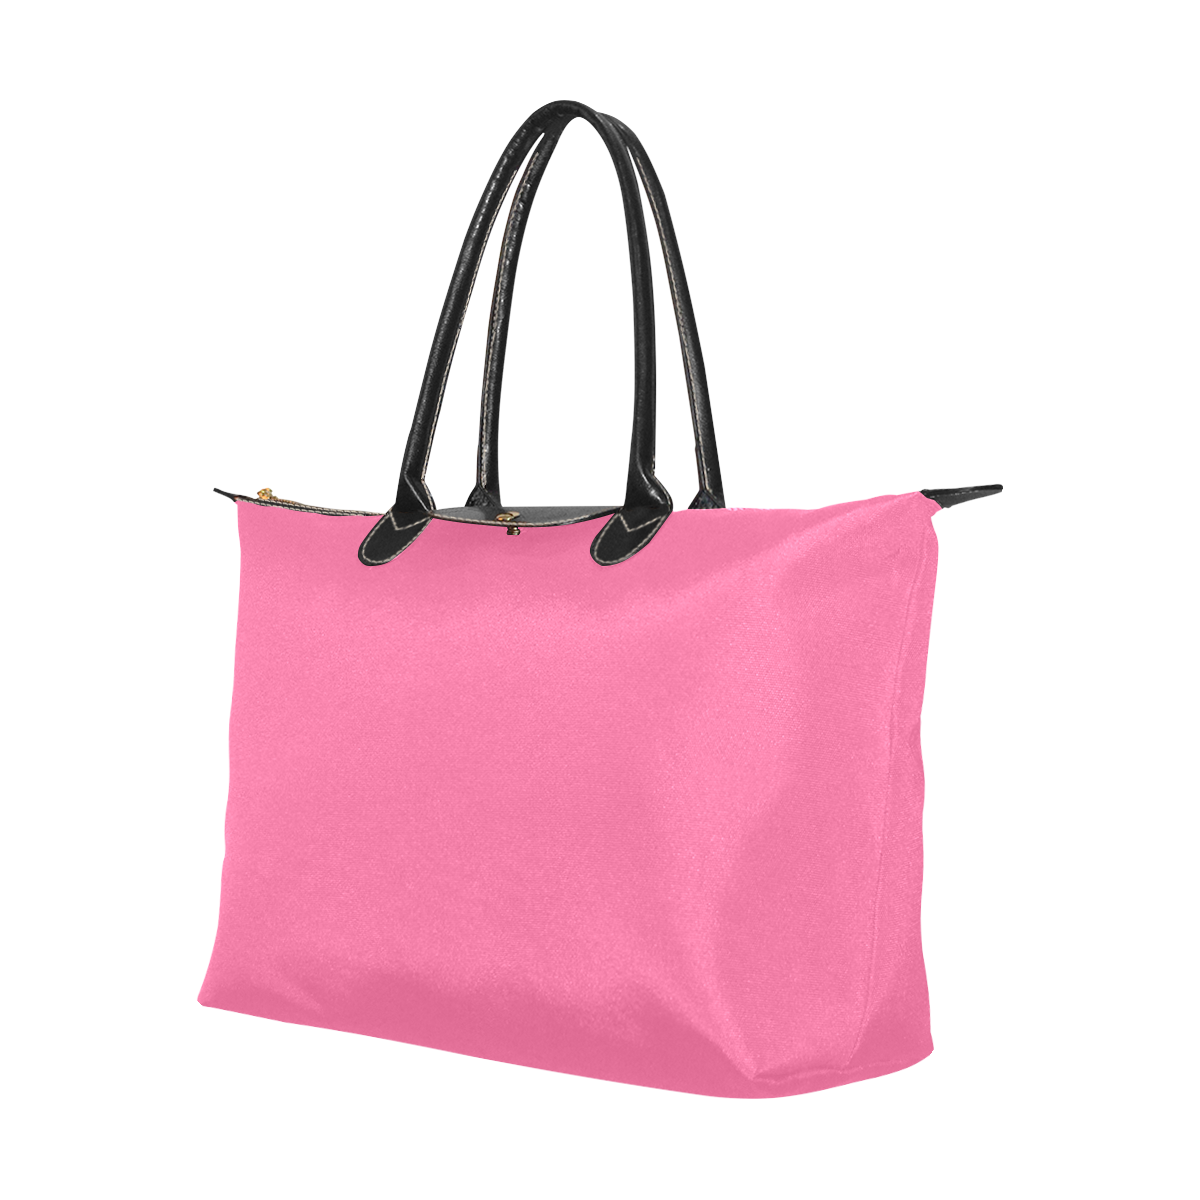 color French pink Single-Shoulder Lady Handbag (Model 1714)